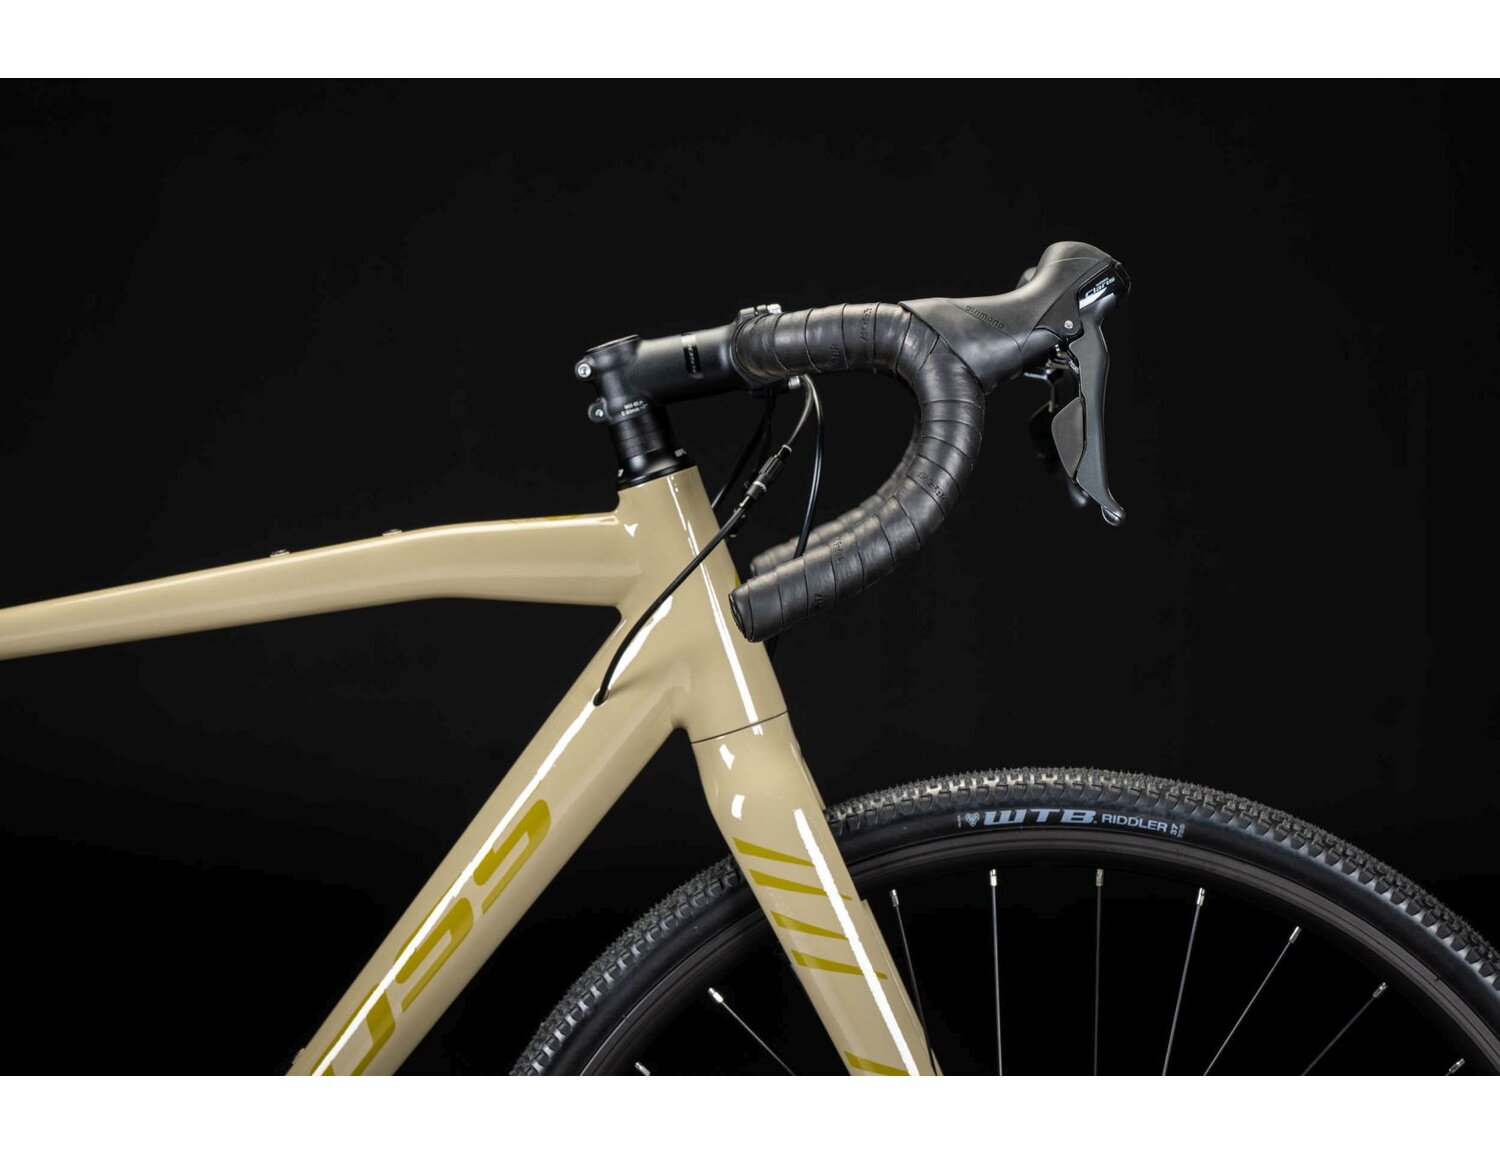  Sztywny aluminiowy widelec oraz opony WTB Riddler o szerokośći 37mm w rowerze gravelowym KROSS Esker 1.0 